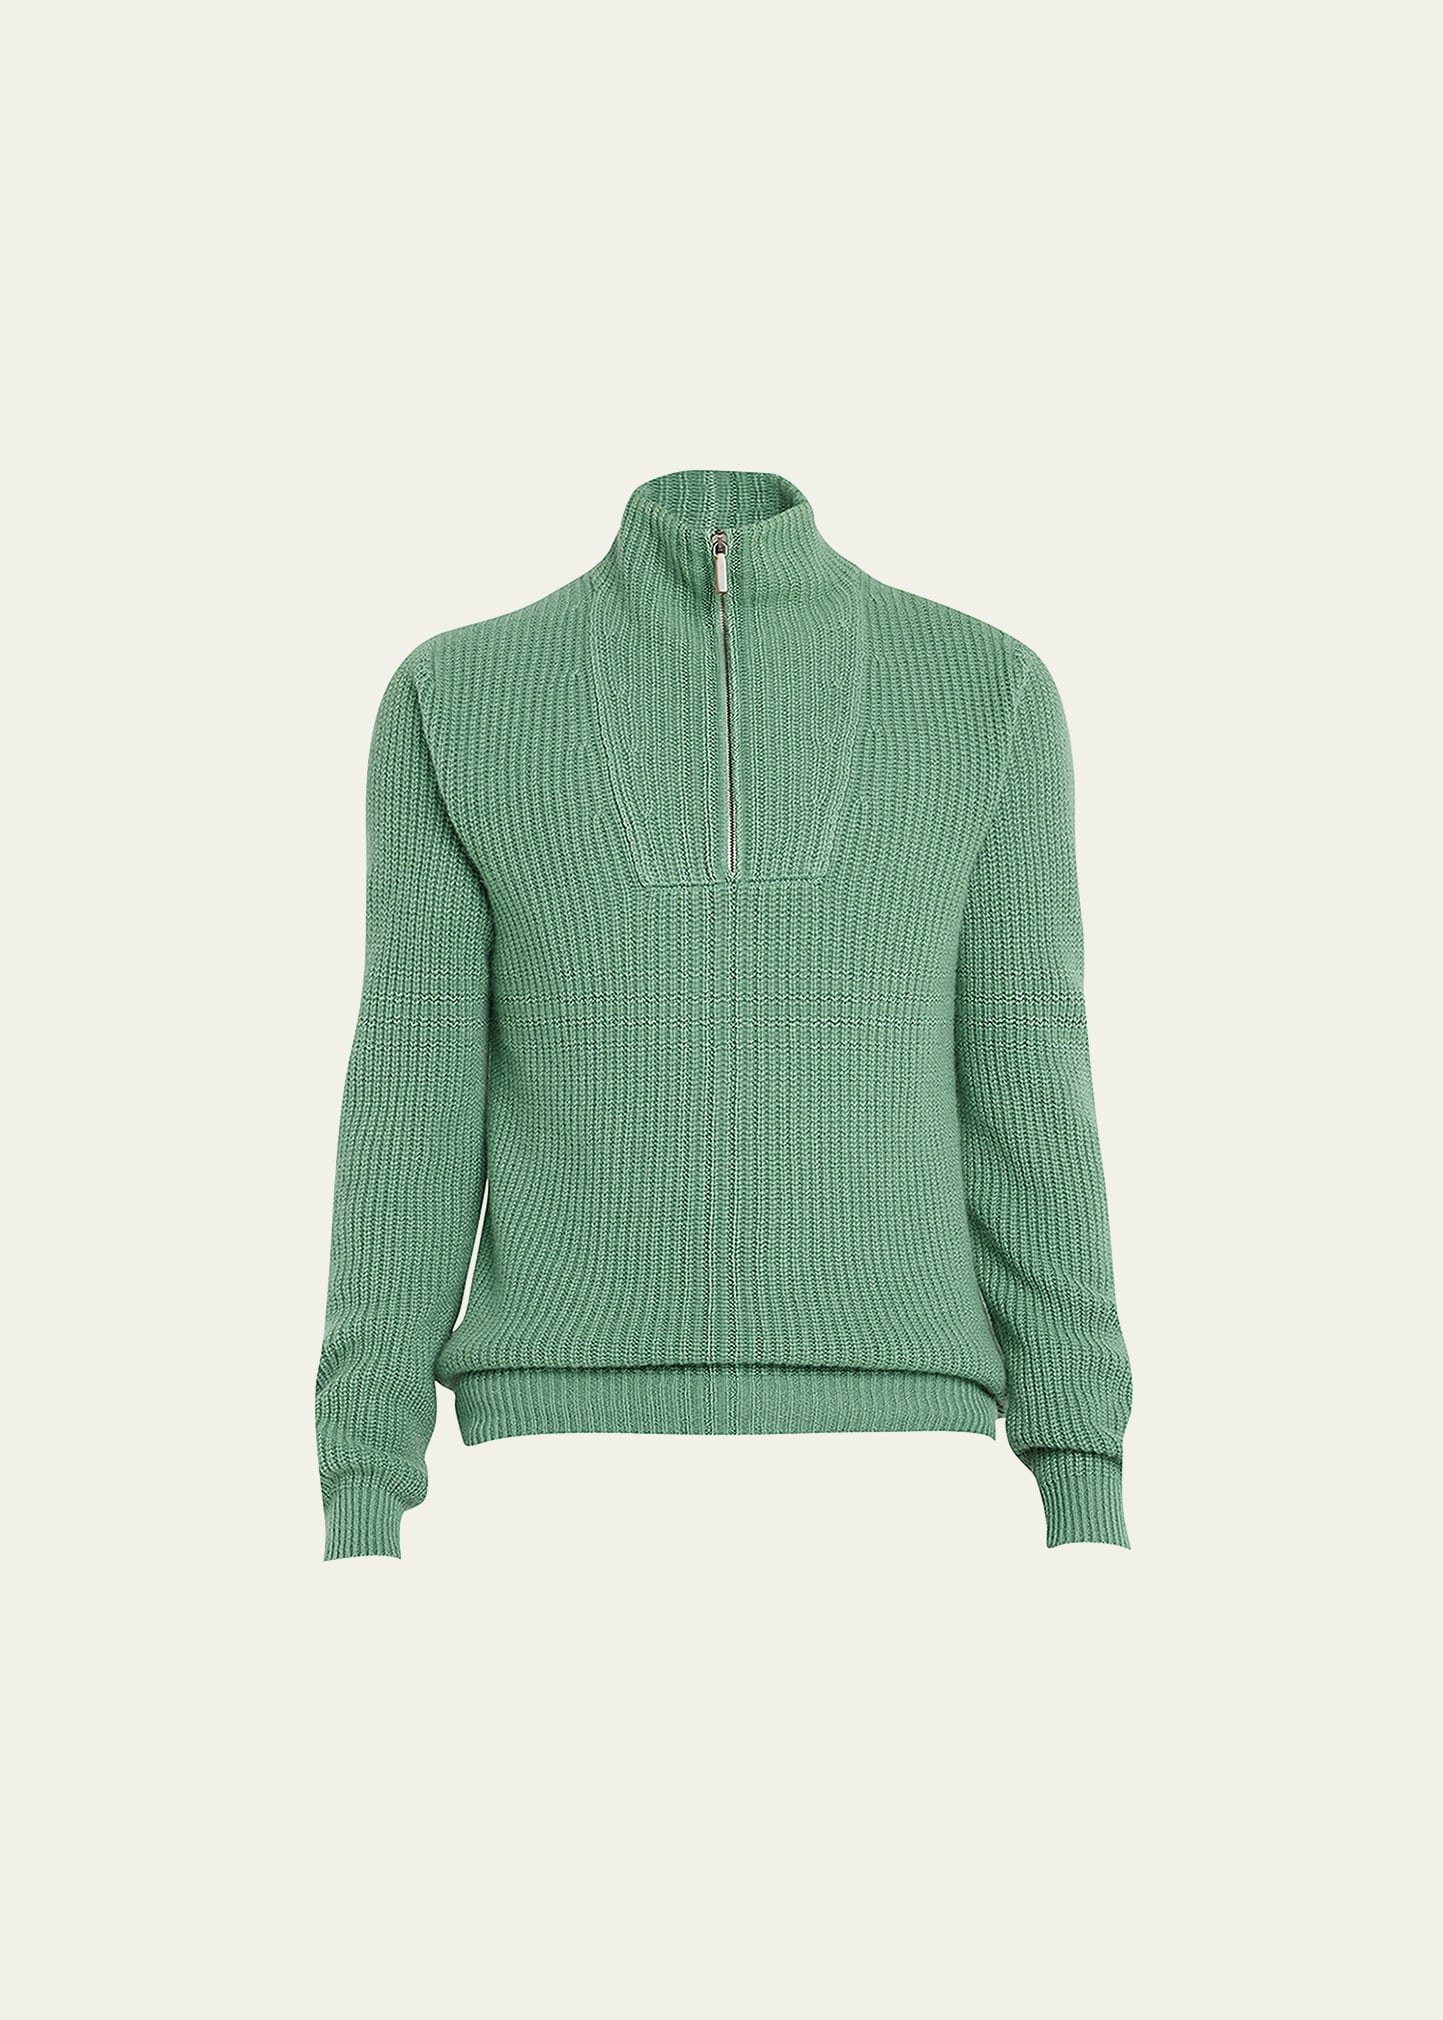 Iris Von Arnim Men's Half-Zip Ribbed Cashmere Sweater